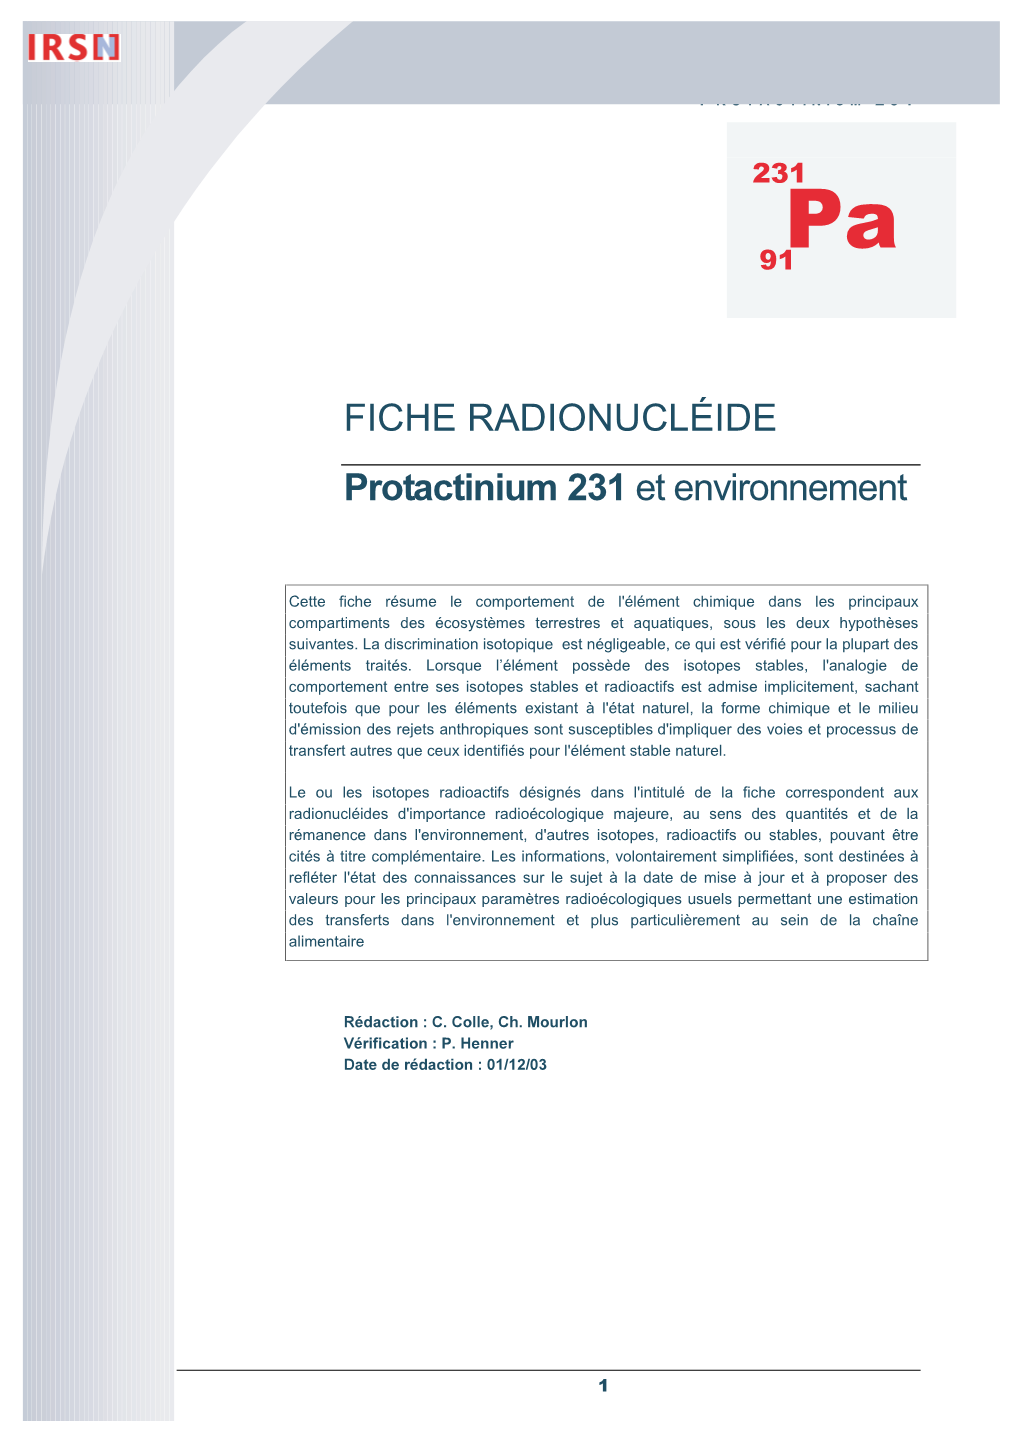 FICHE RADIONUCLÉIDE Protactinium 231 Et Environnement